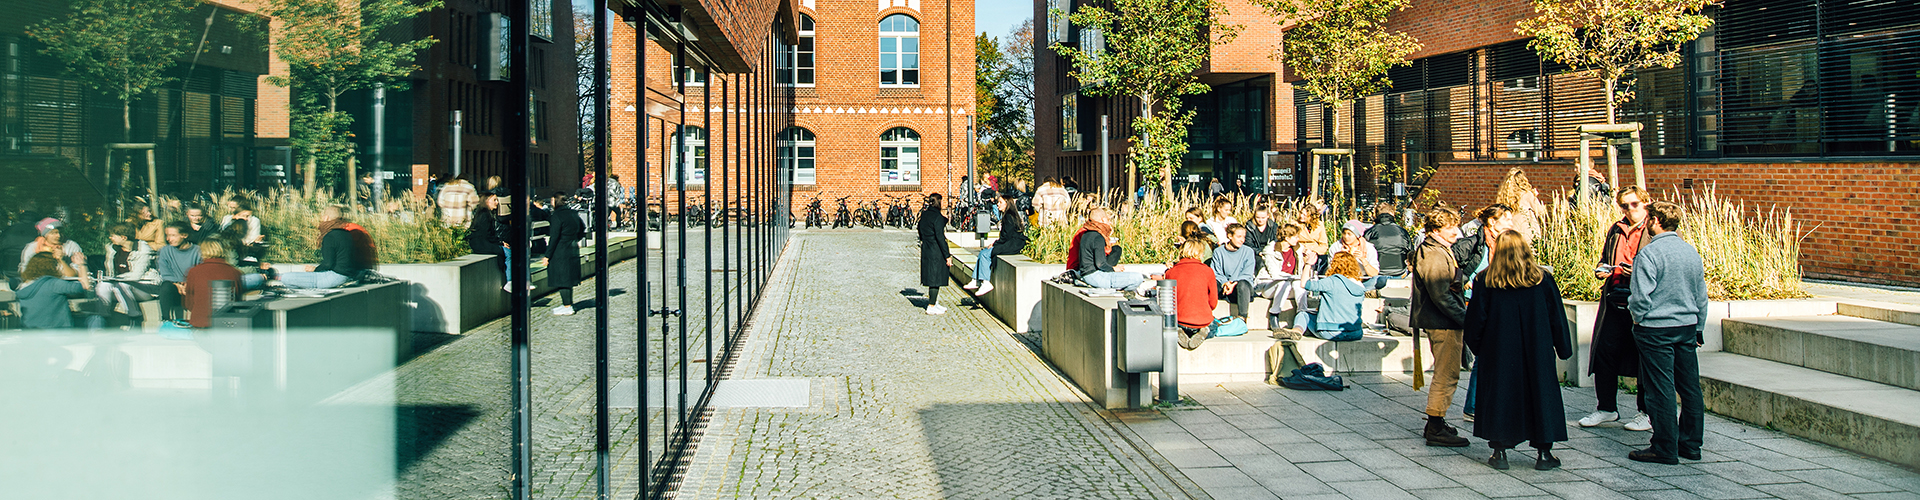 In der Innenstadt von Greifswald befindet sich der Campus Loefflerstraße der Universität Greifswald